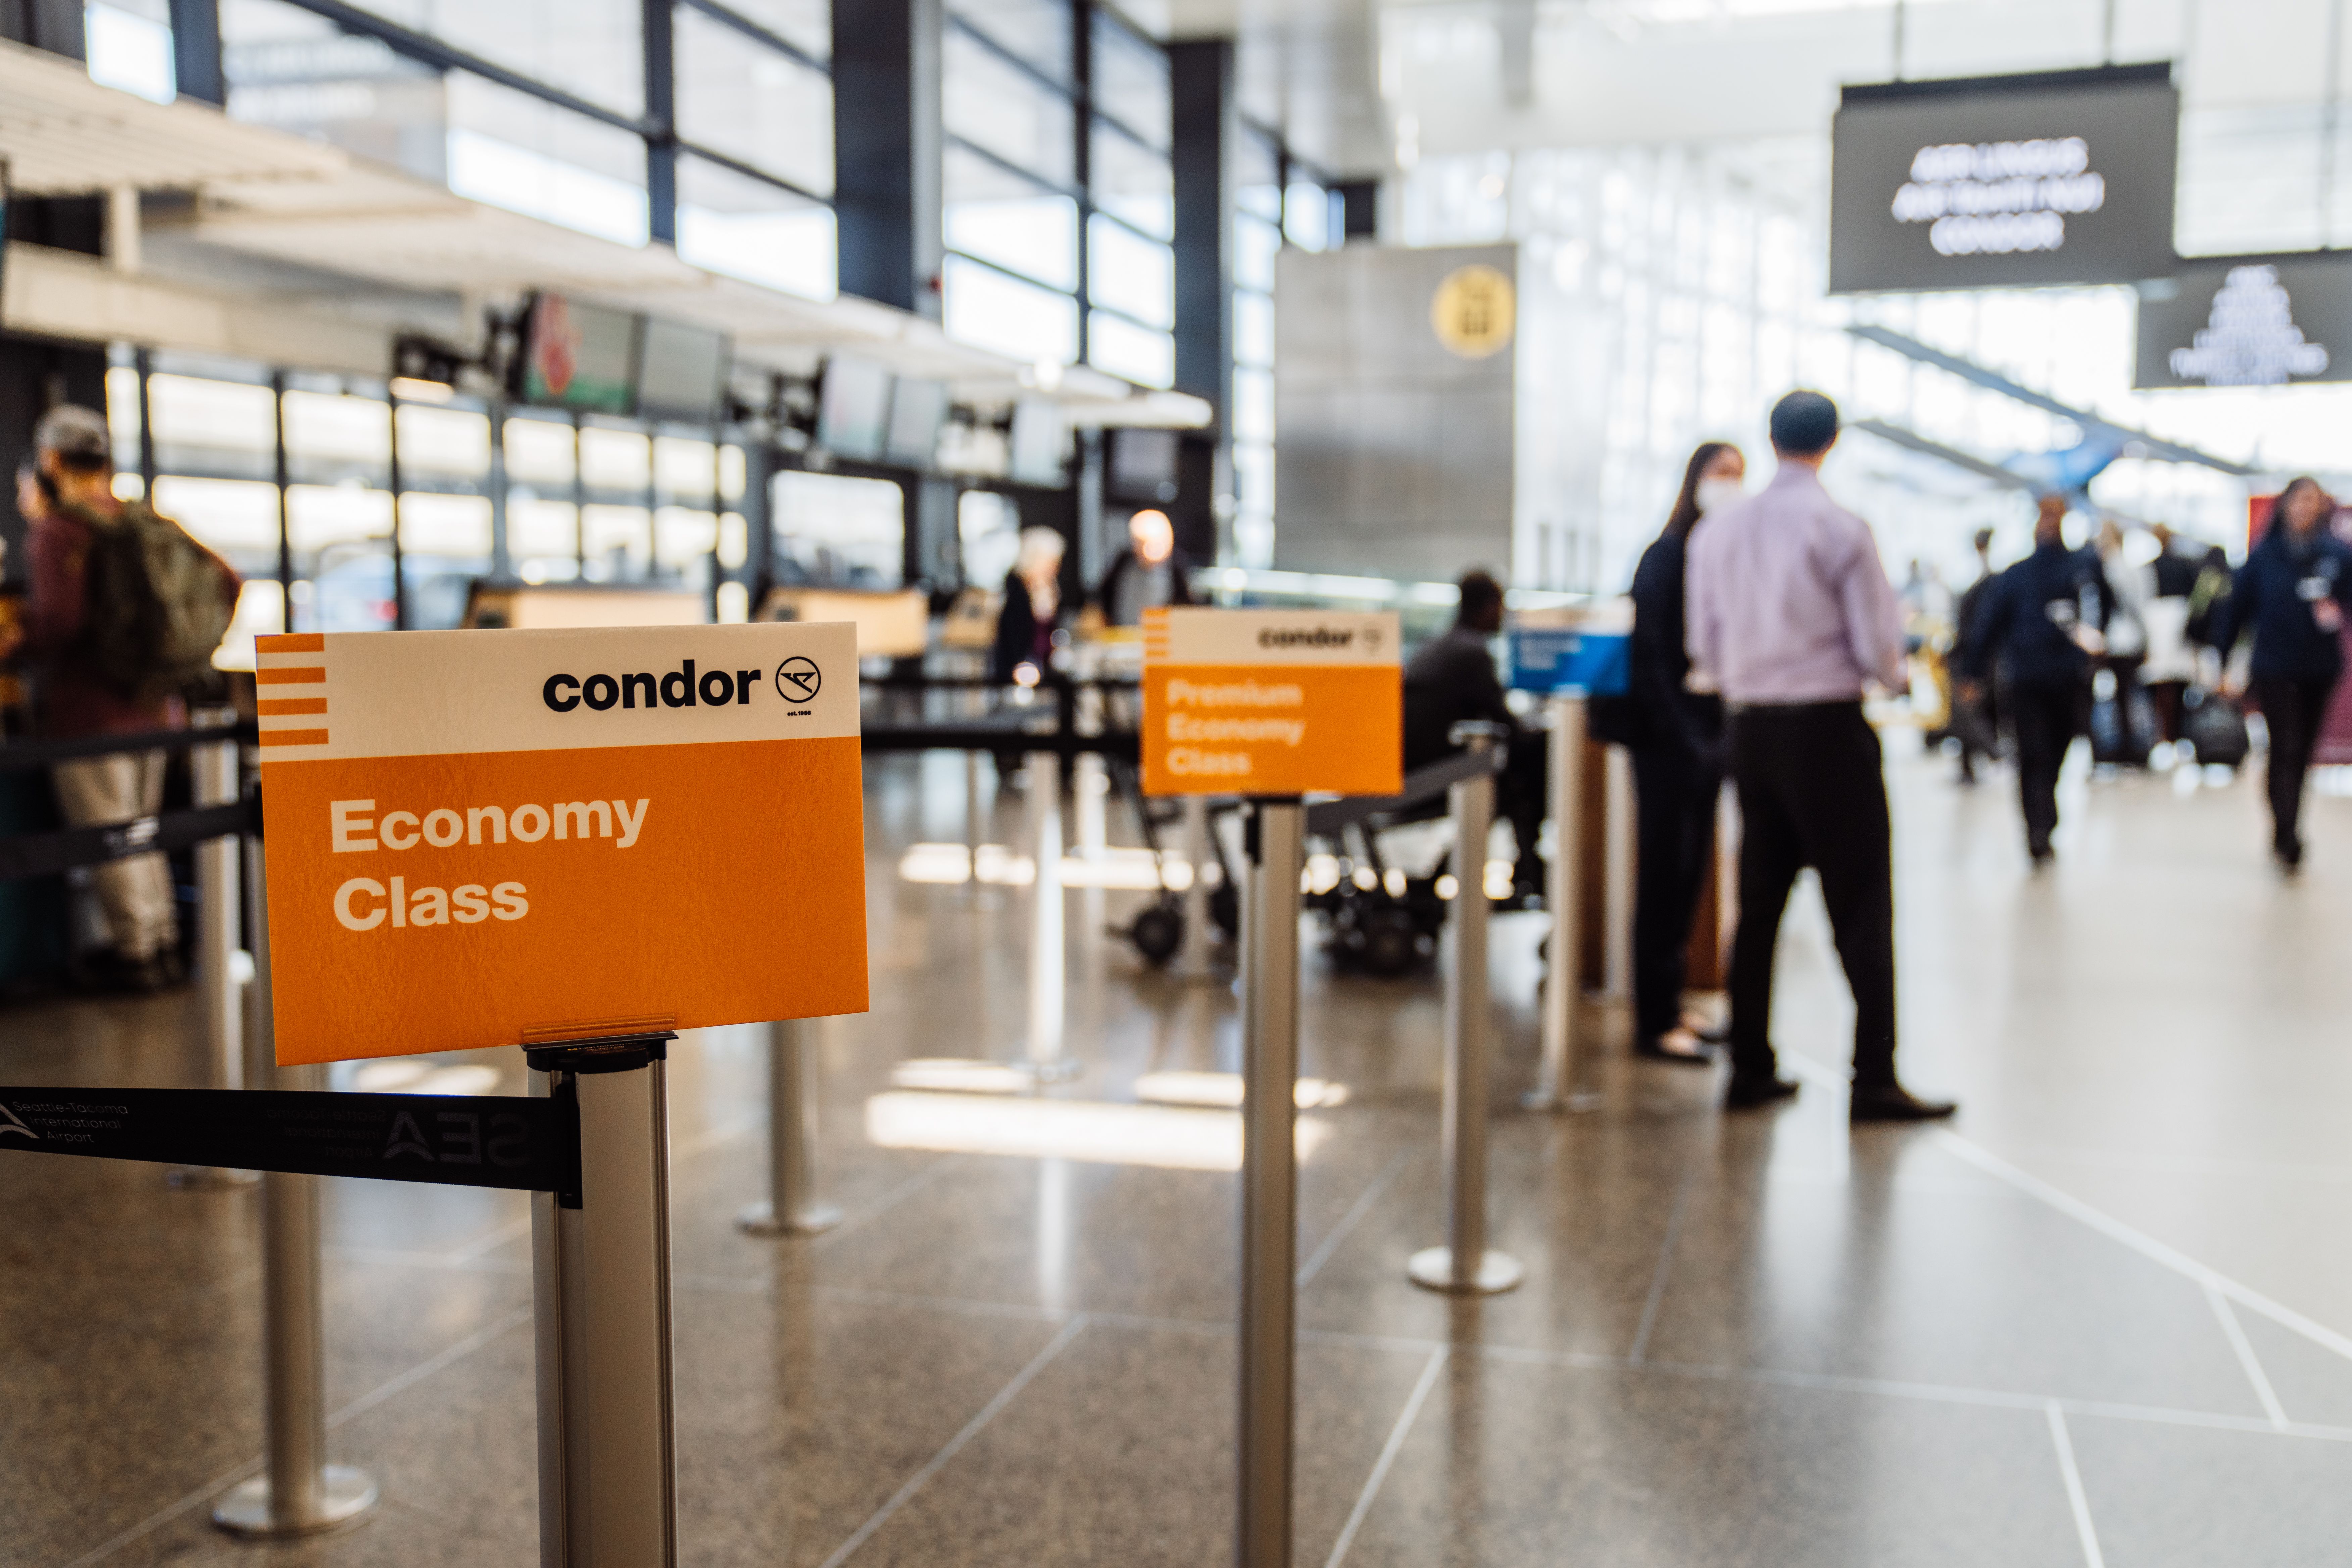 Condor economy check in sign